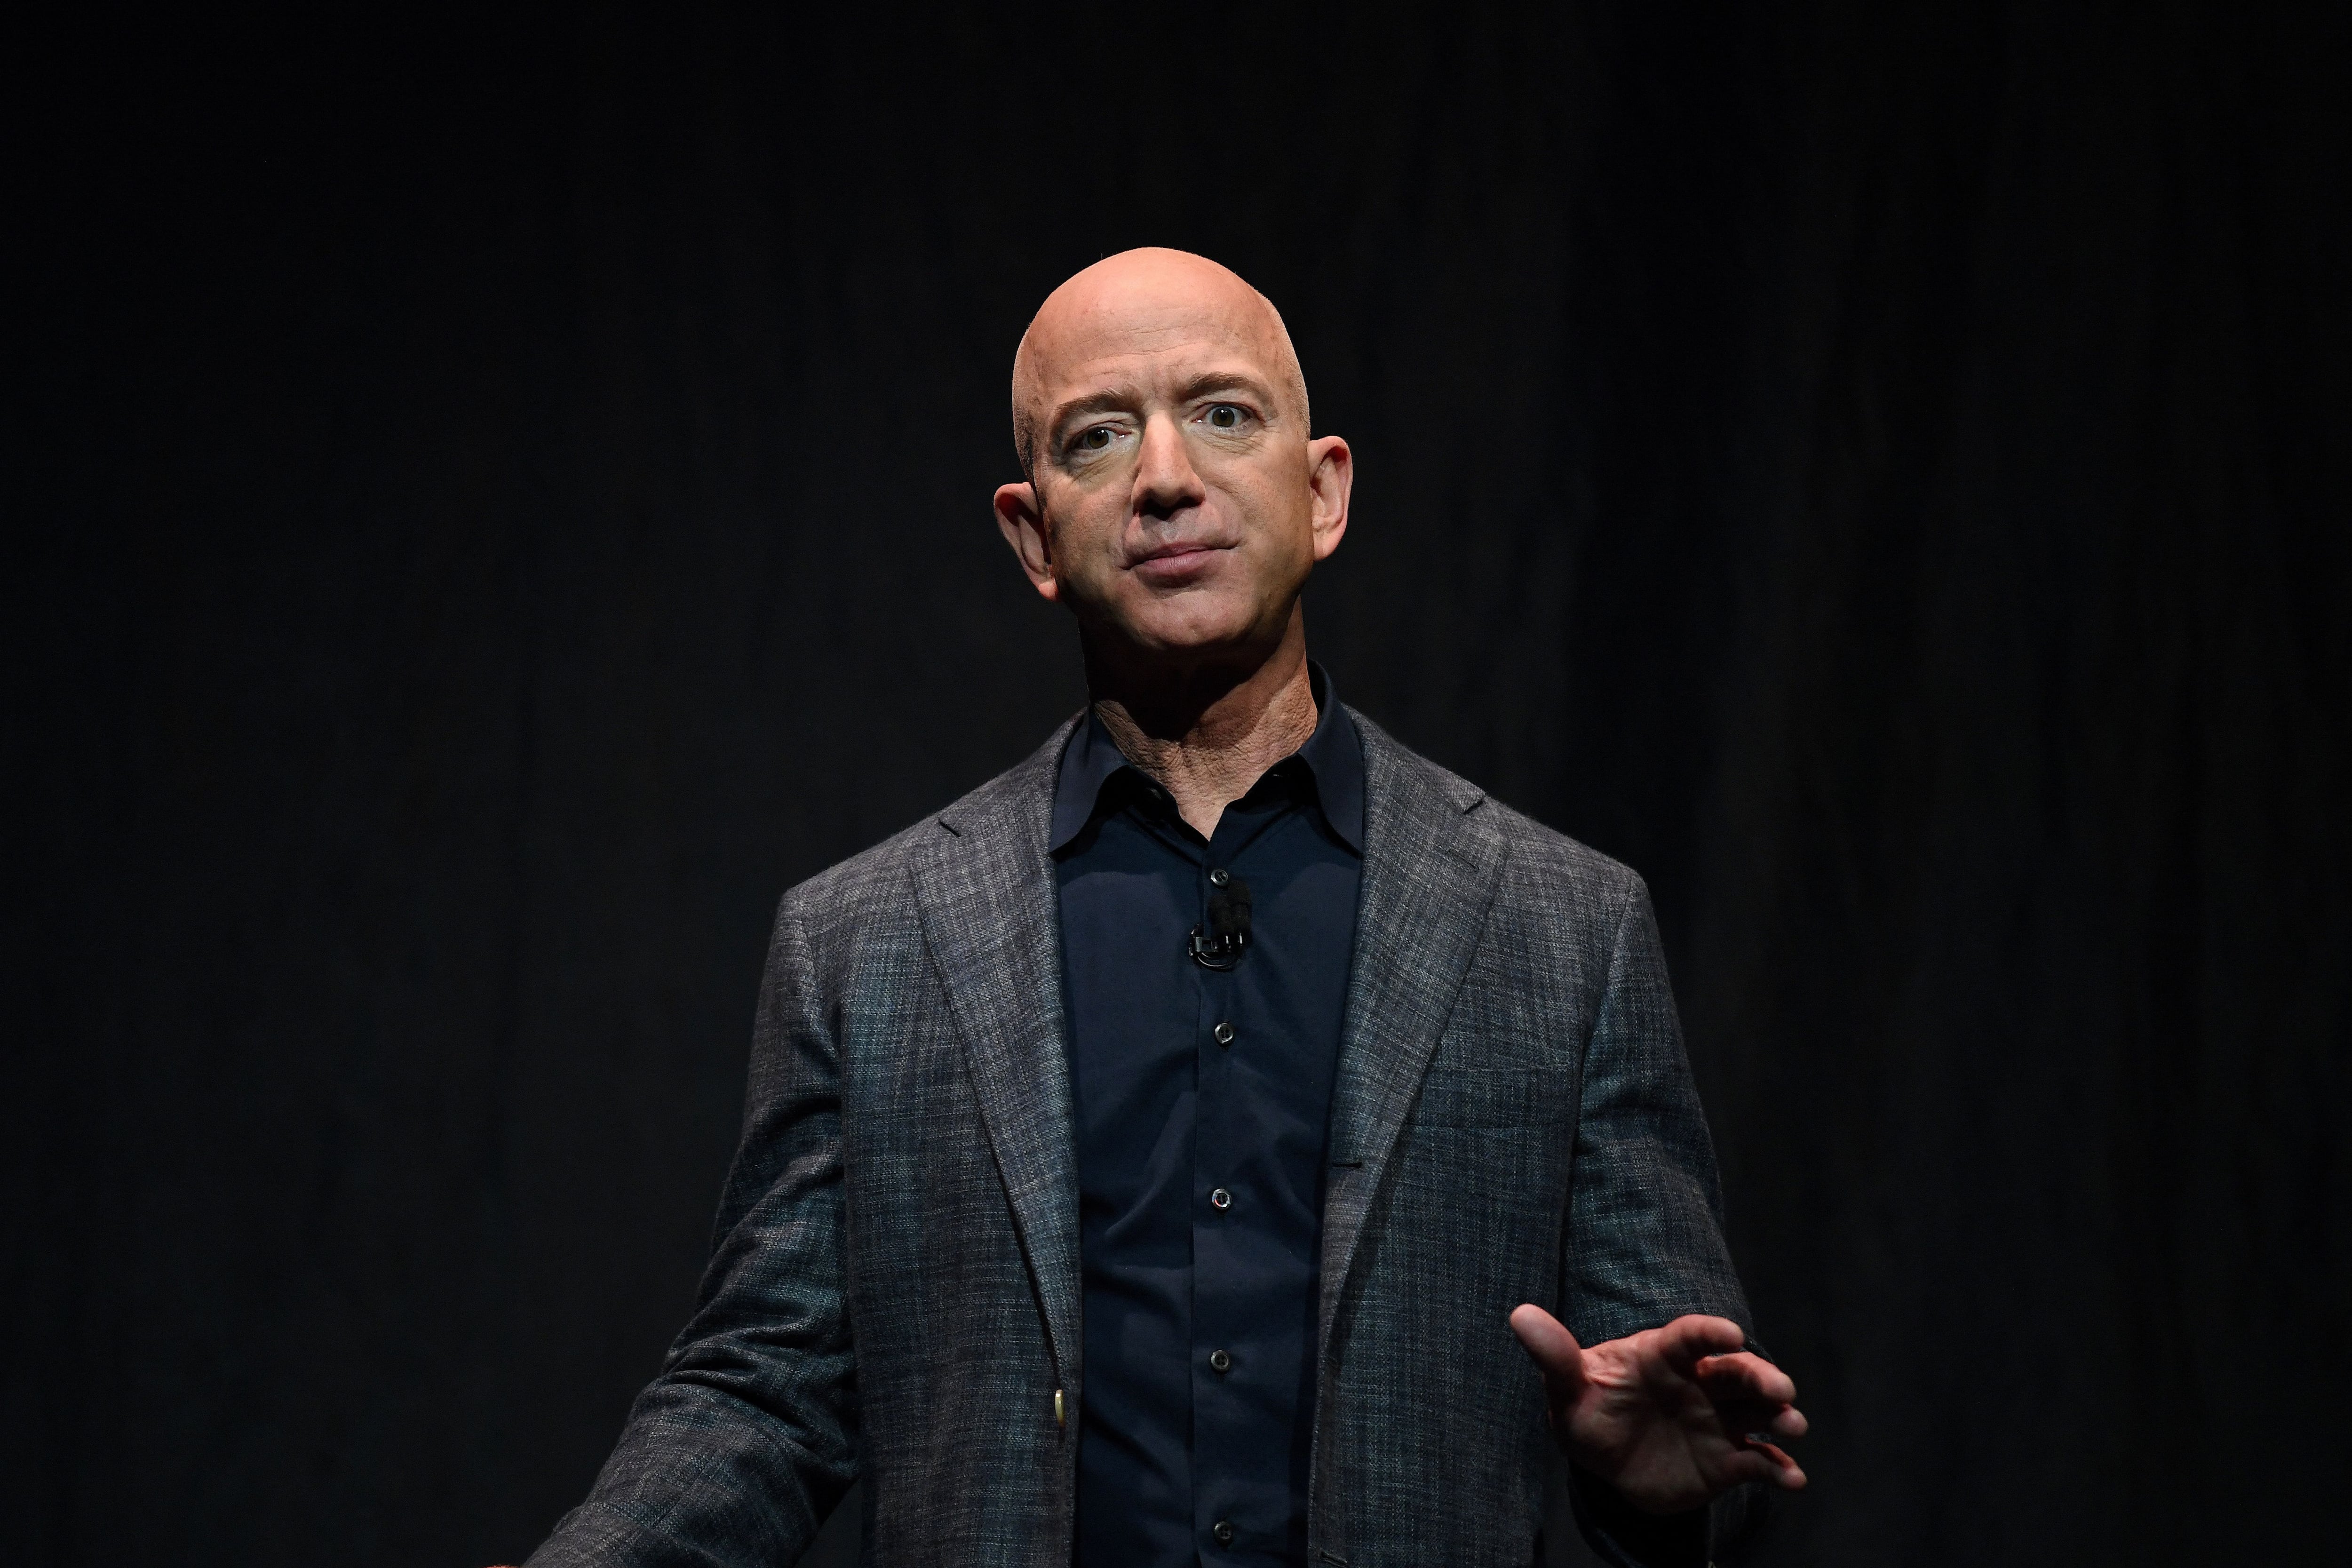 El fundador de Amazon considera que la toma de decisiones rápida y arriesgarse a cometer errores es clave para los negocios y la vida. (REUTERS/Clodagh Kilcoyne)